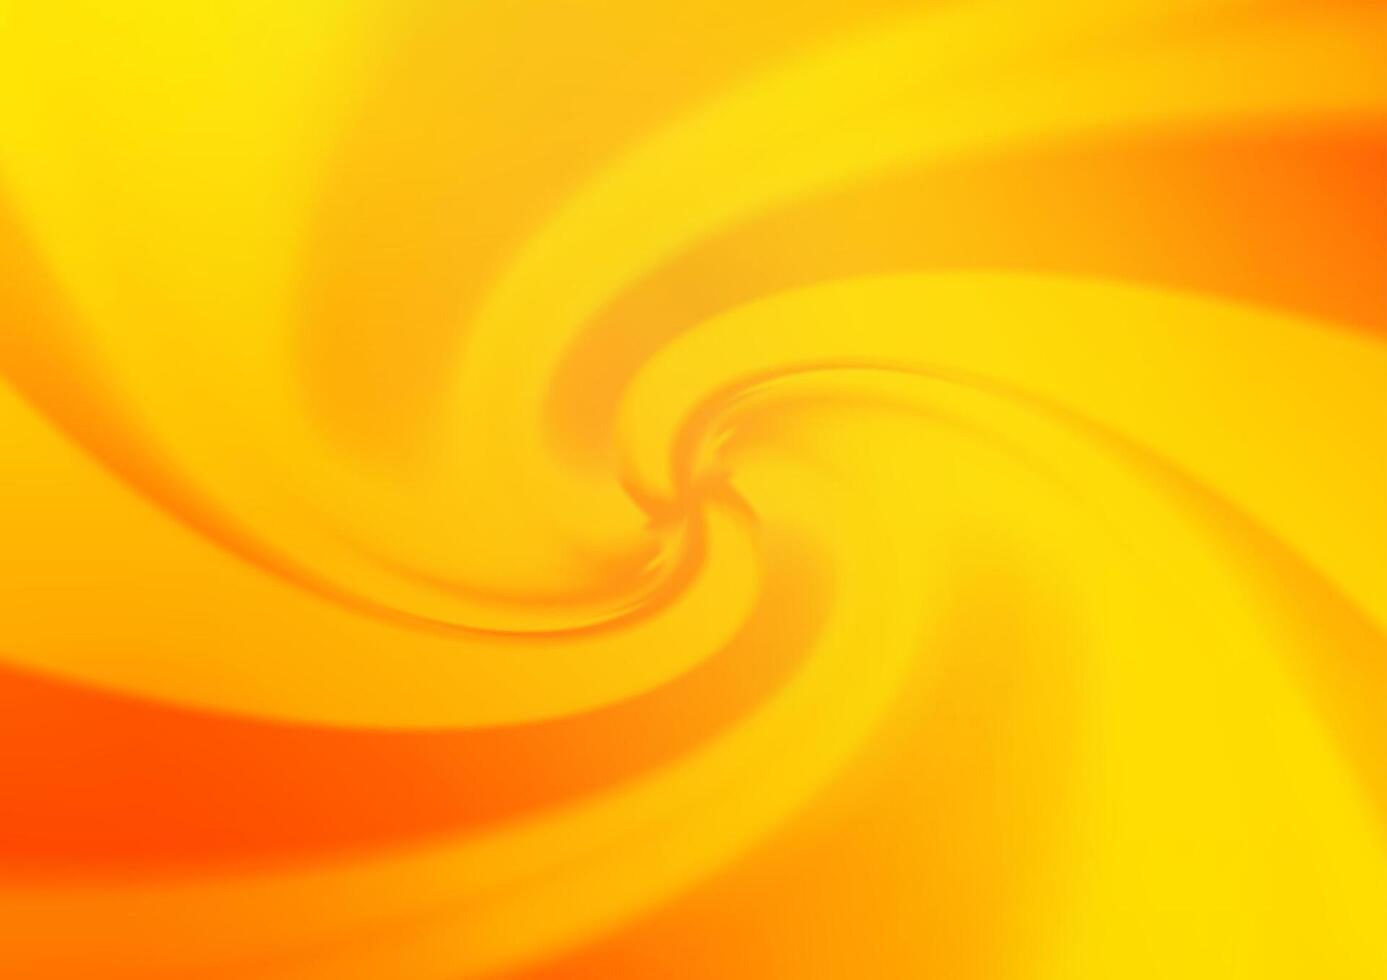 patrón de bokeh abstracto de vector amarillo claro, naranja.